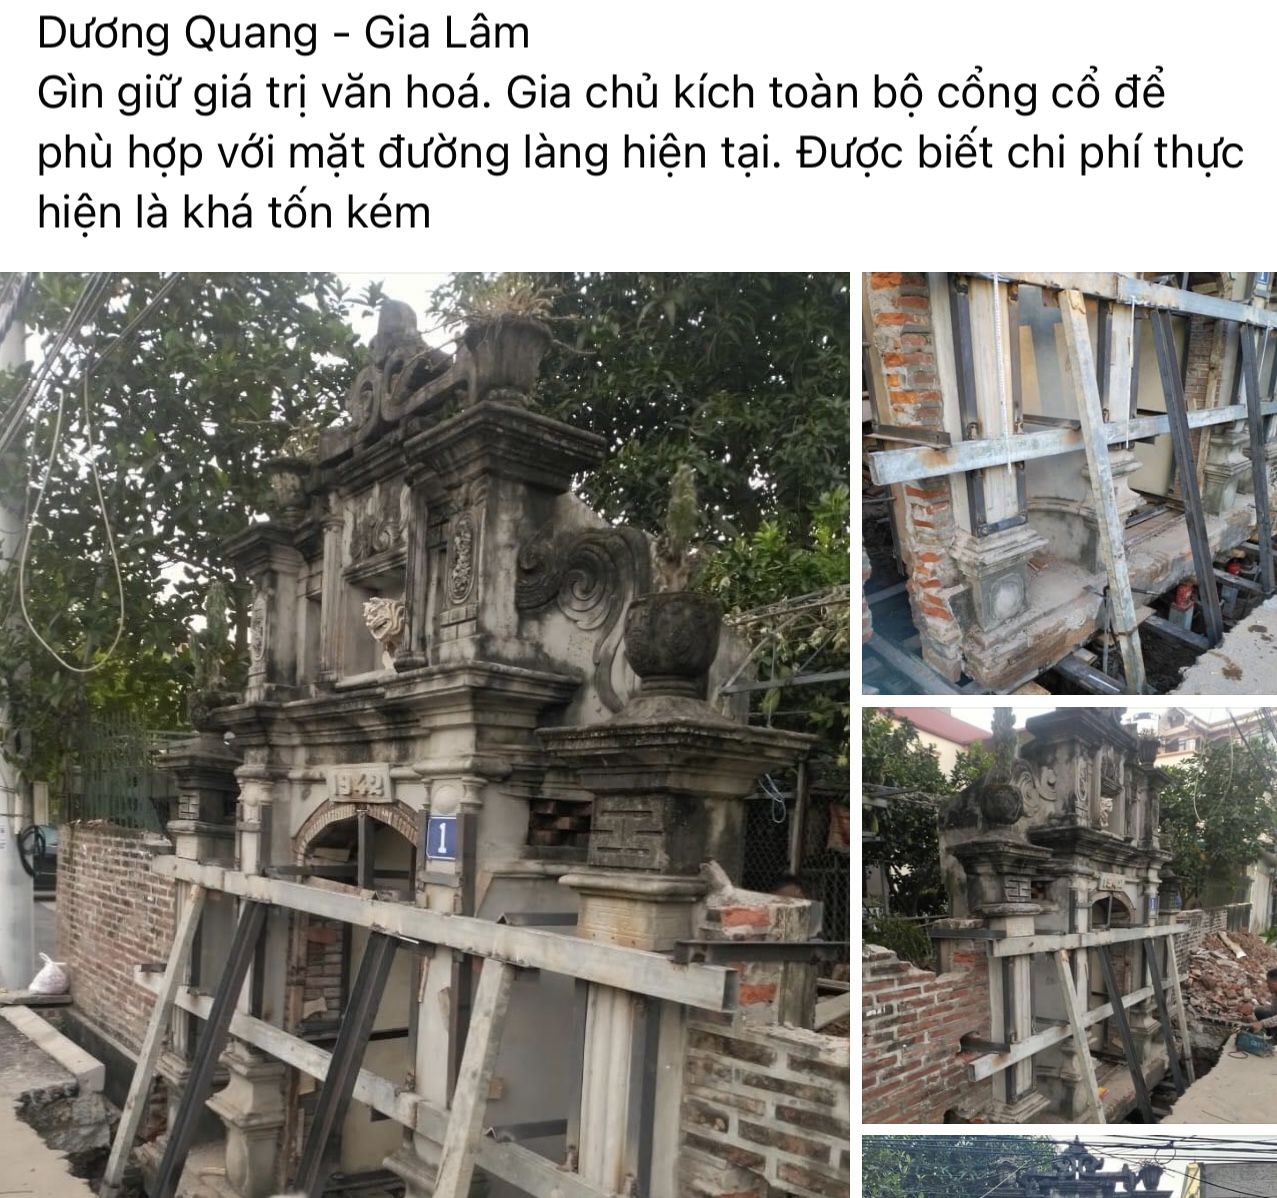 Độc đáo chiếc cổng 80 năm ở Hà Nội được gia đình chi trăm triệu bảo tồn - Ảnh 1.